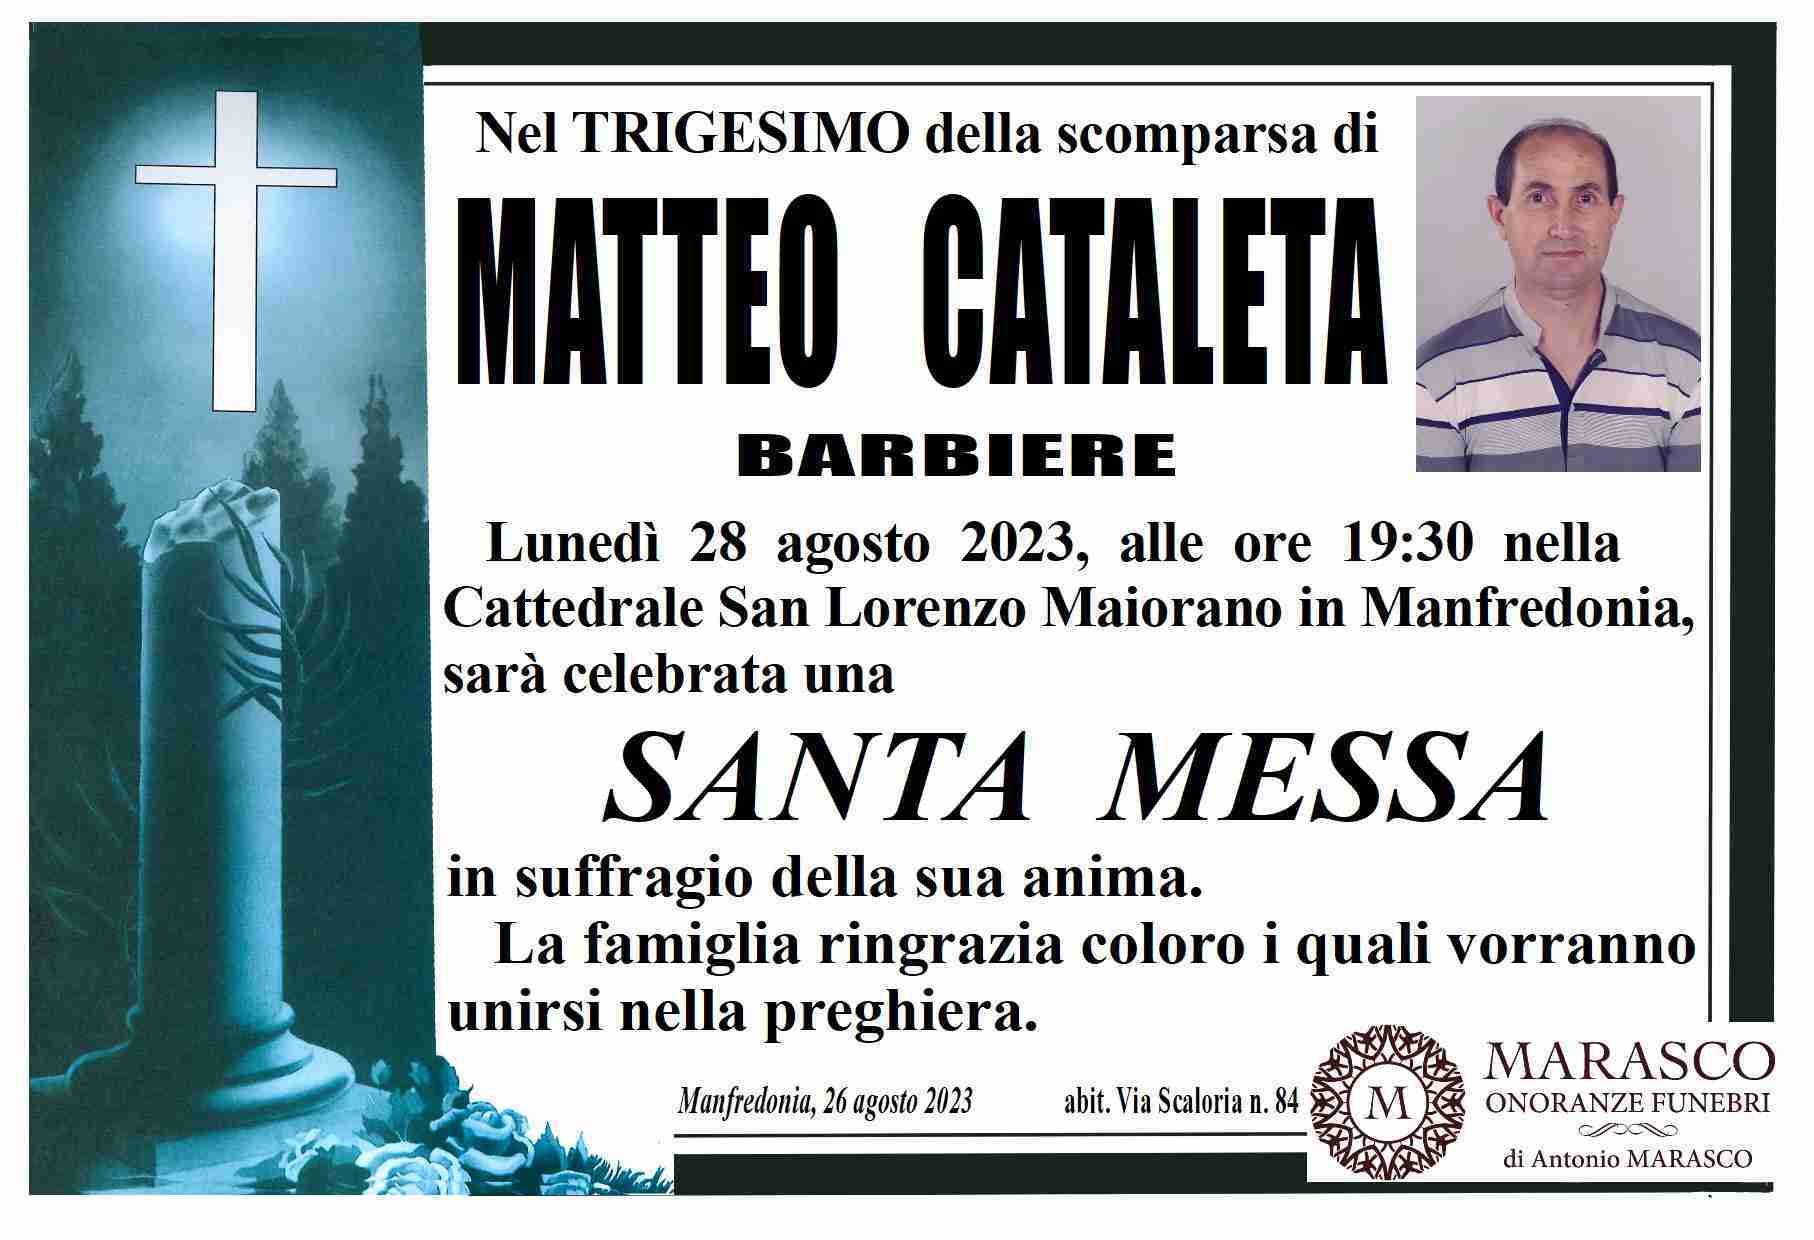 Matteo Cataleta